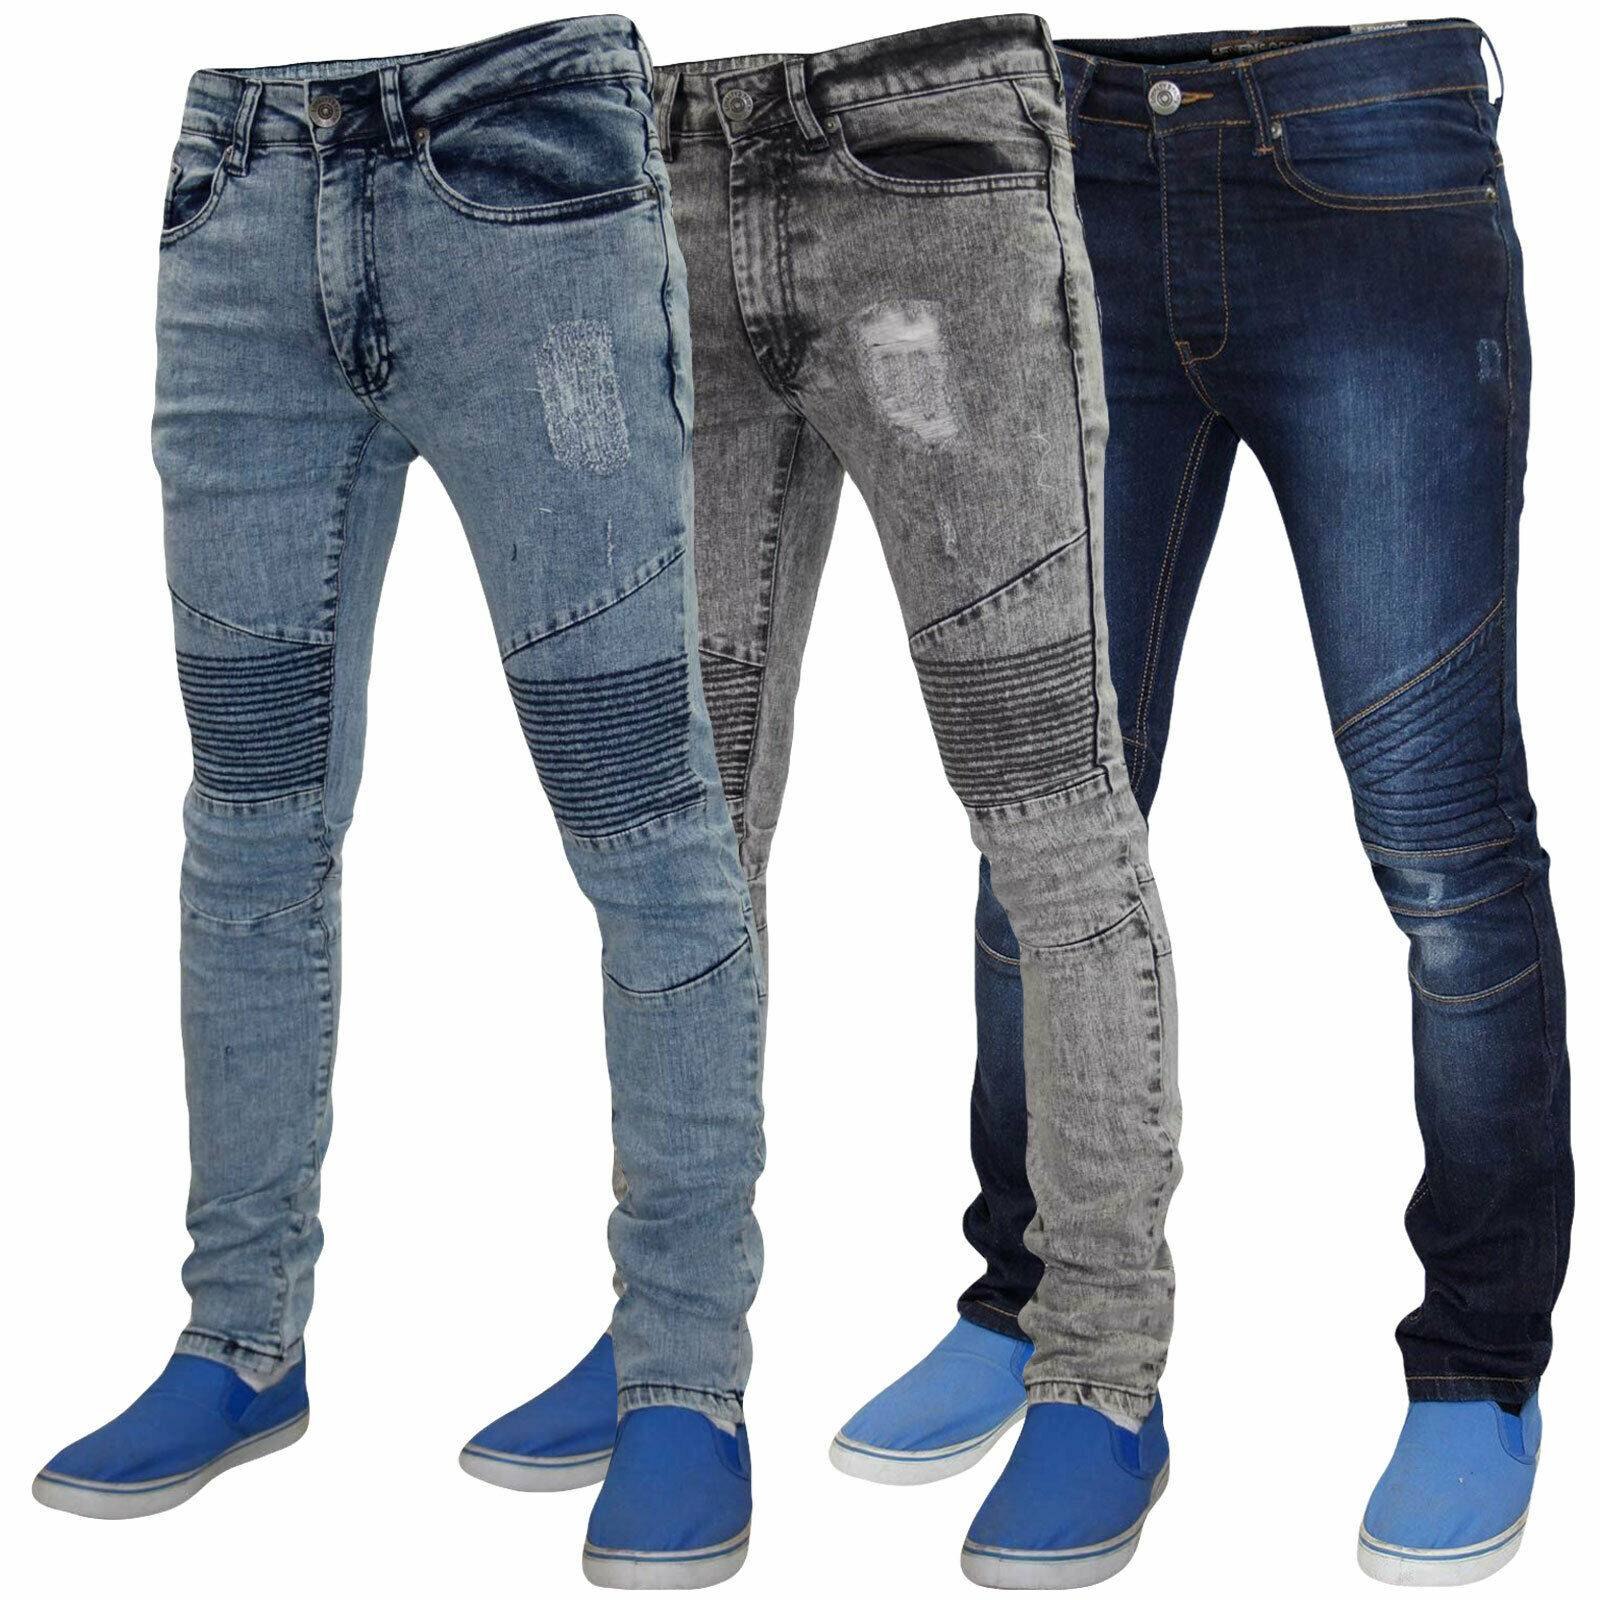 Мужская оптом дешево. Siviglia Denim s70243 джинсы мужские. Bingoss Denim джинсы мужские. Мужские джинсы Denim Cotton Fit. Джинсы коттон мужские зауженные.